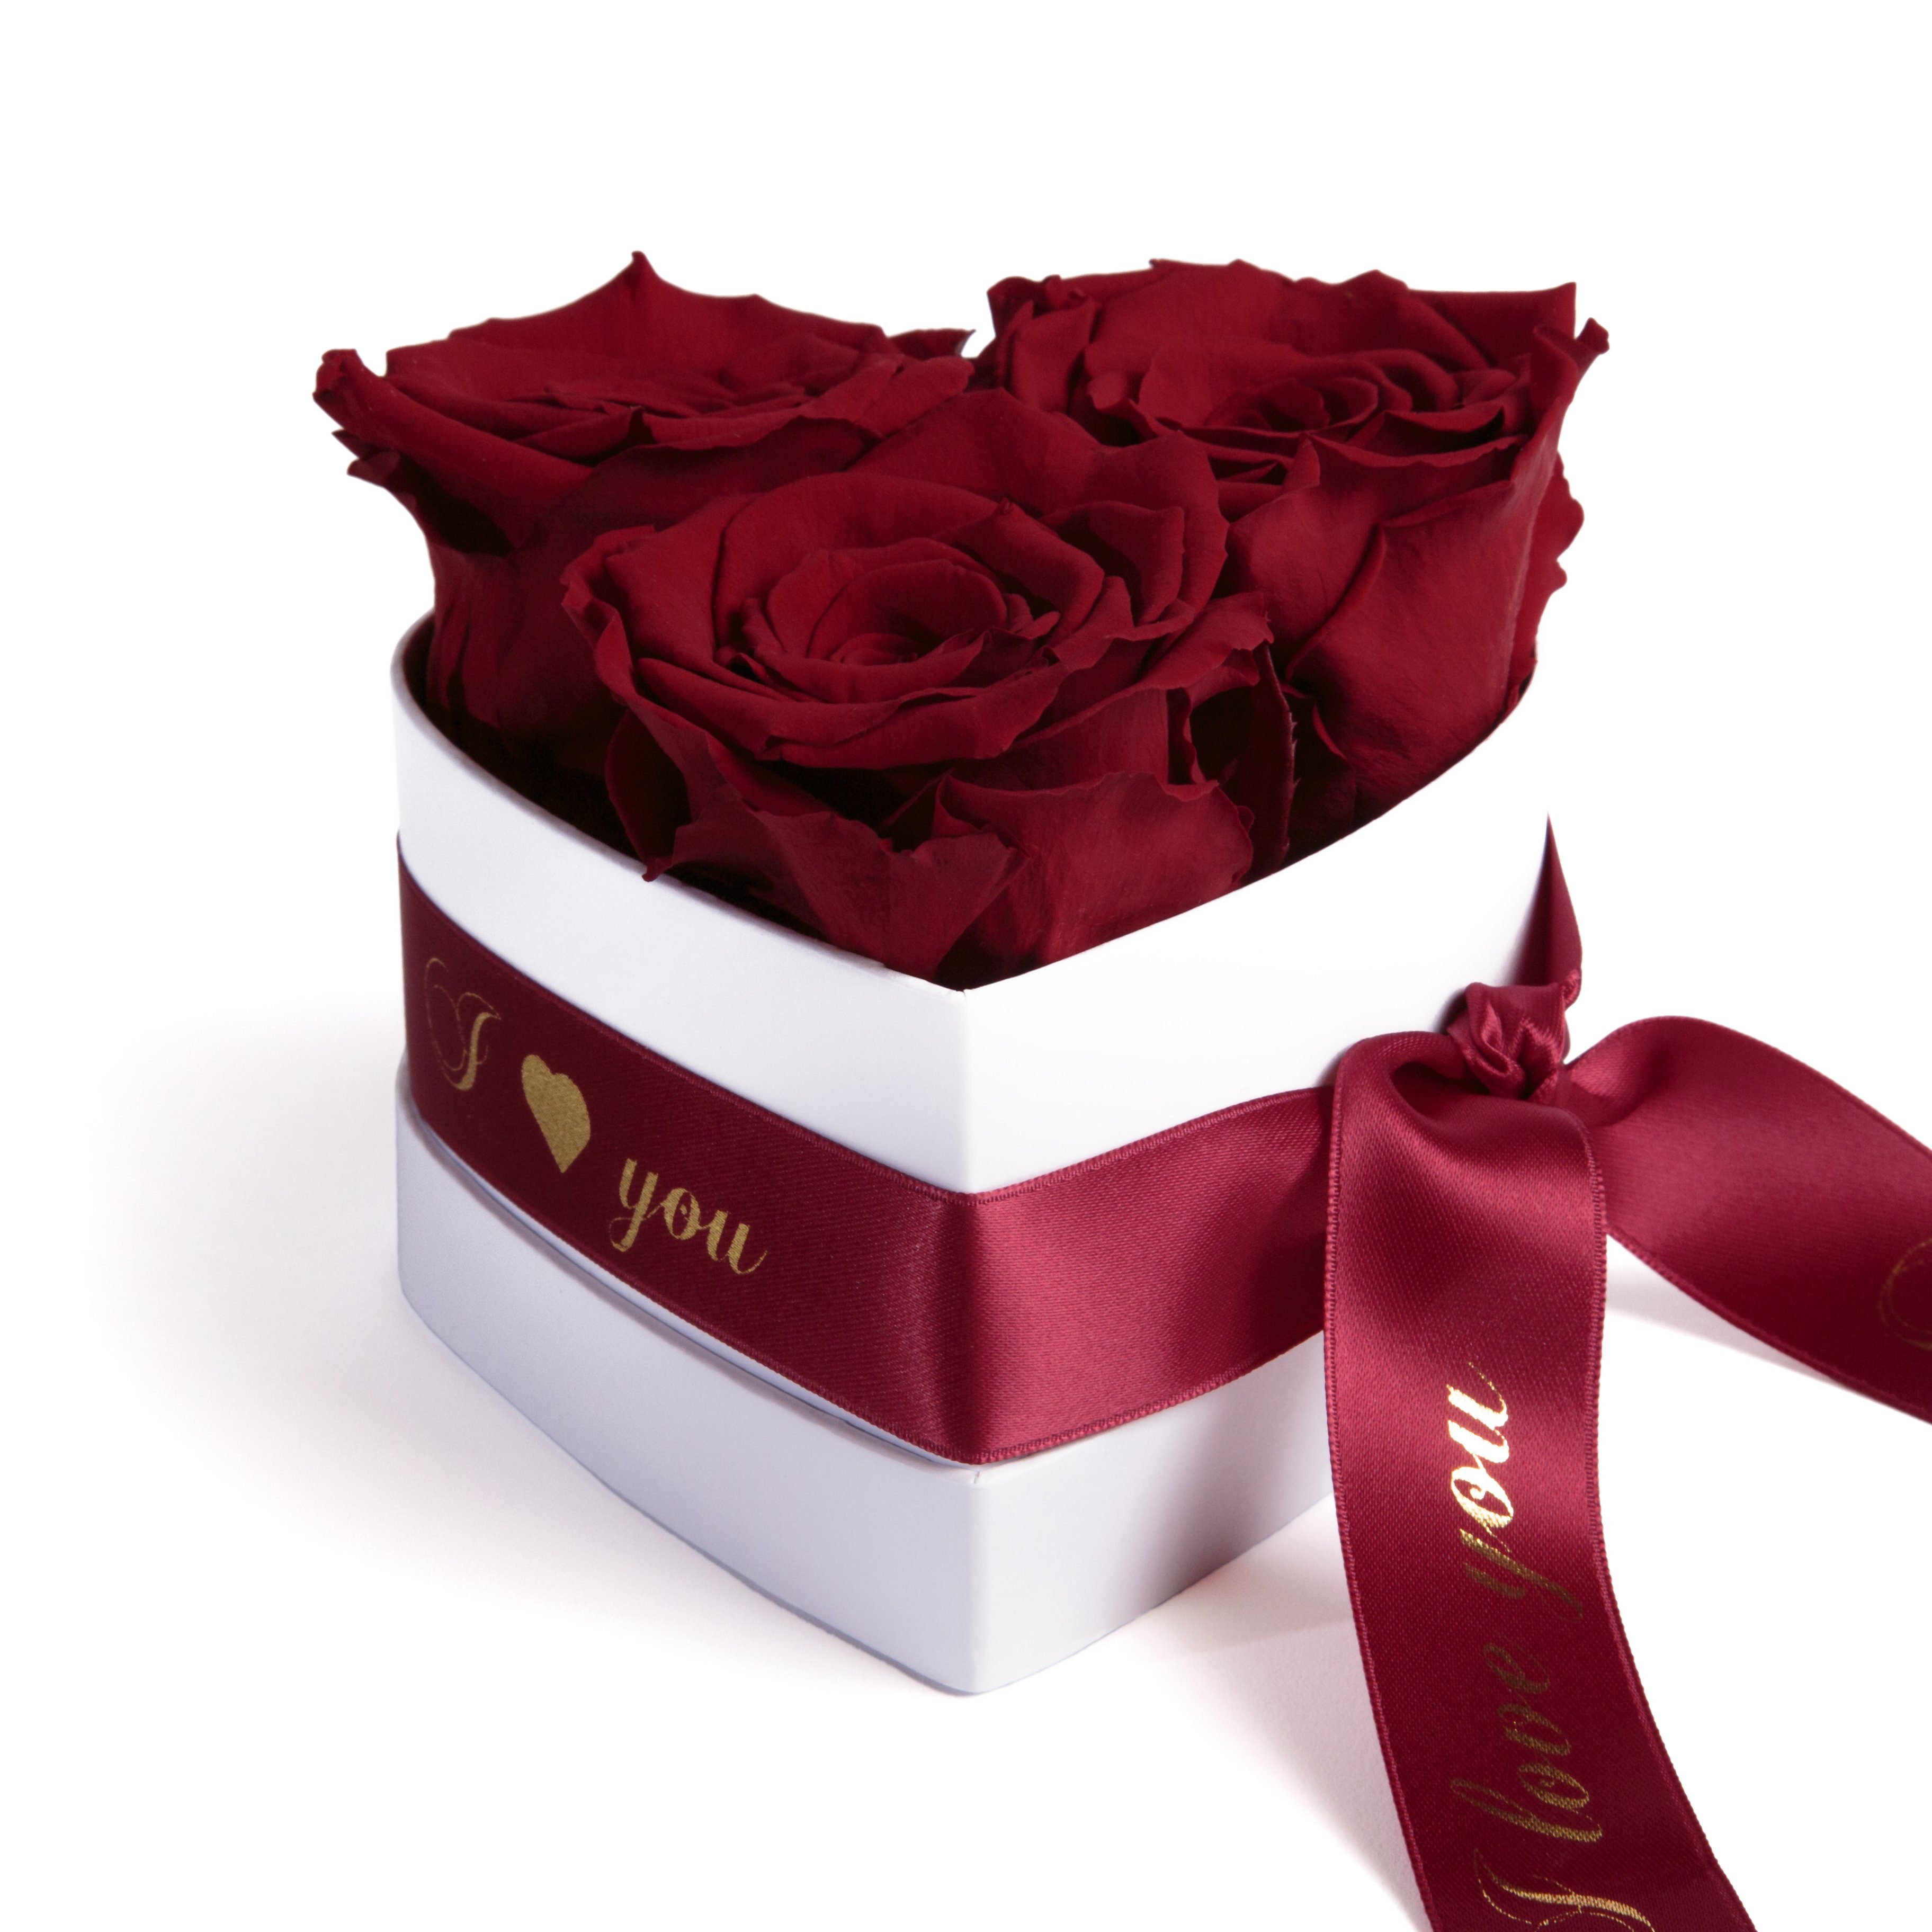 Kunstblume Rosenbox Herz 3 konservierte Infinity Rosen in Box I Love You Rose, ROSEMARIE SCHULZ Heidelberg, Höhe 8.5 cm, Valentinstag Geschenk für Sie Burgundy